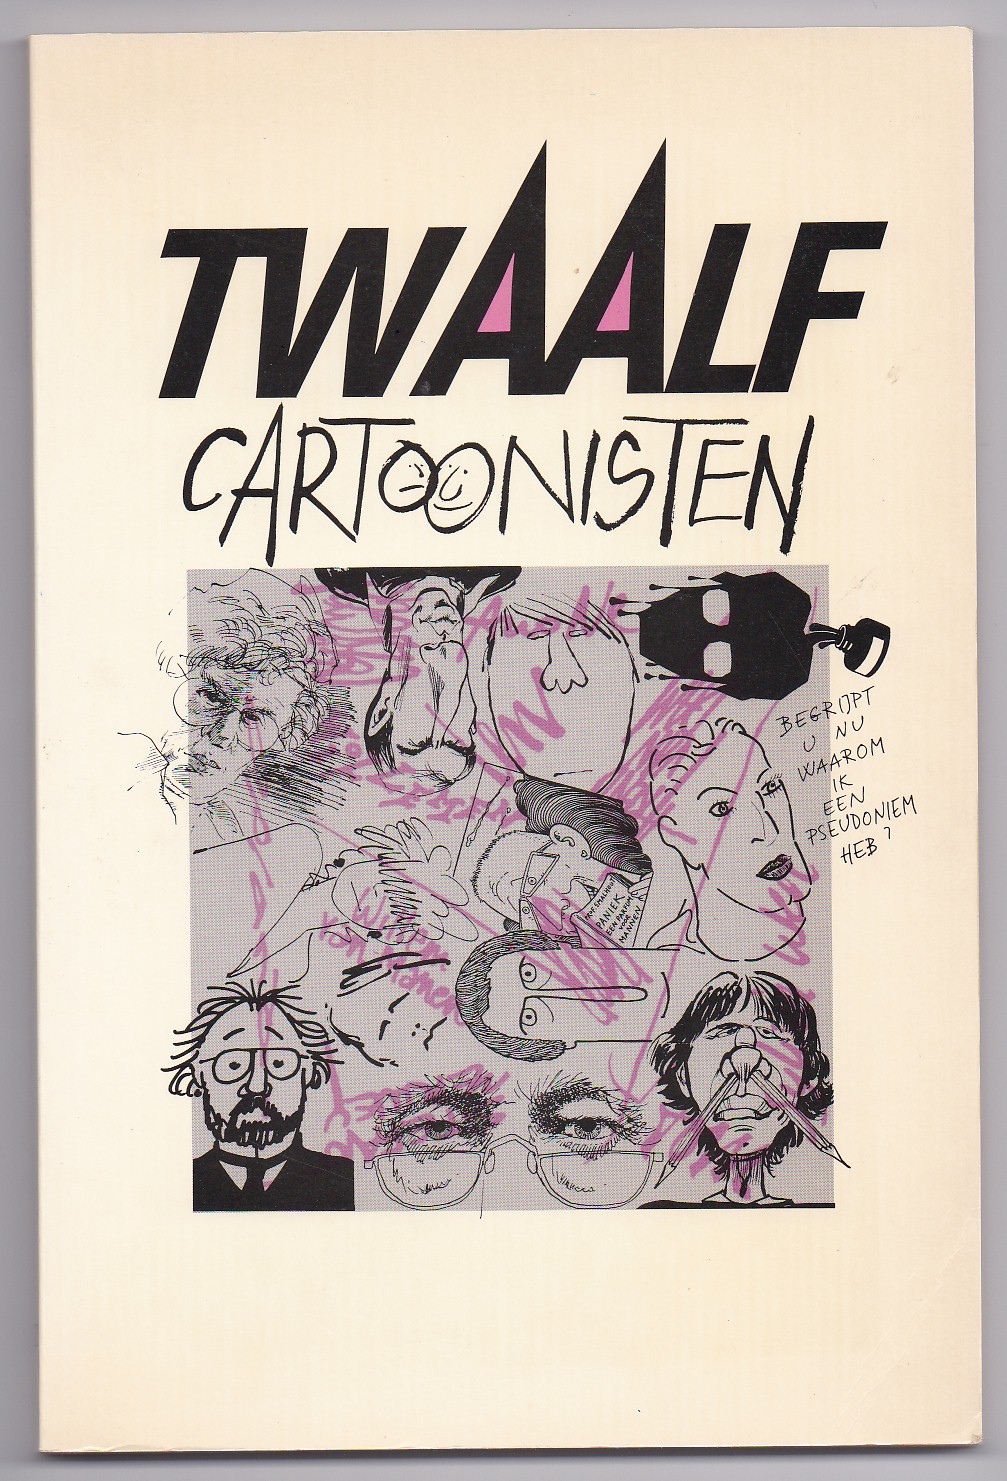 Div.auteurs - Twaalf cartoonisten